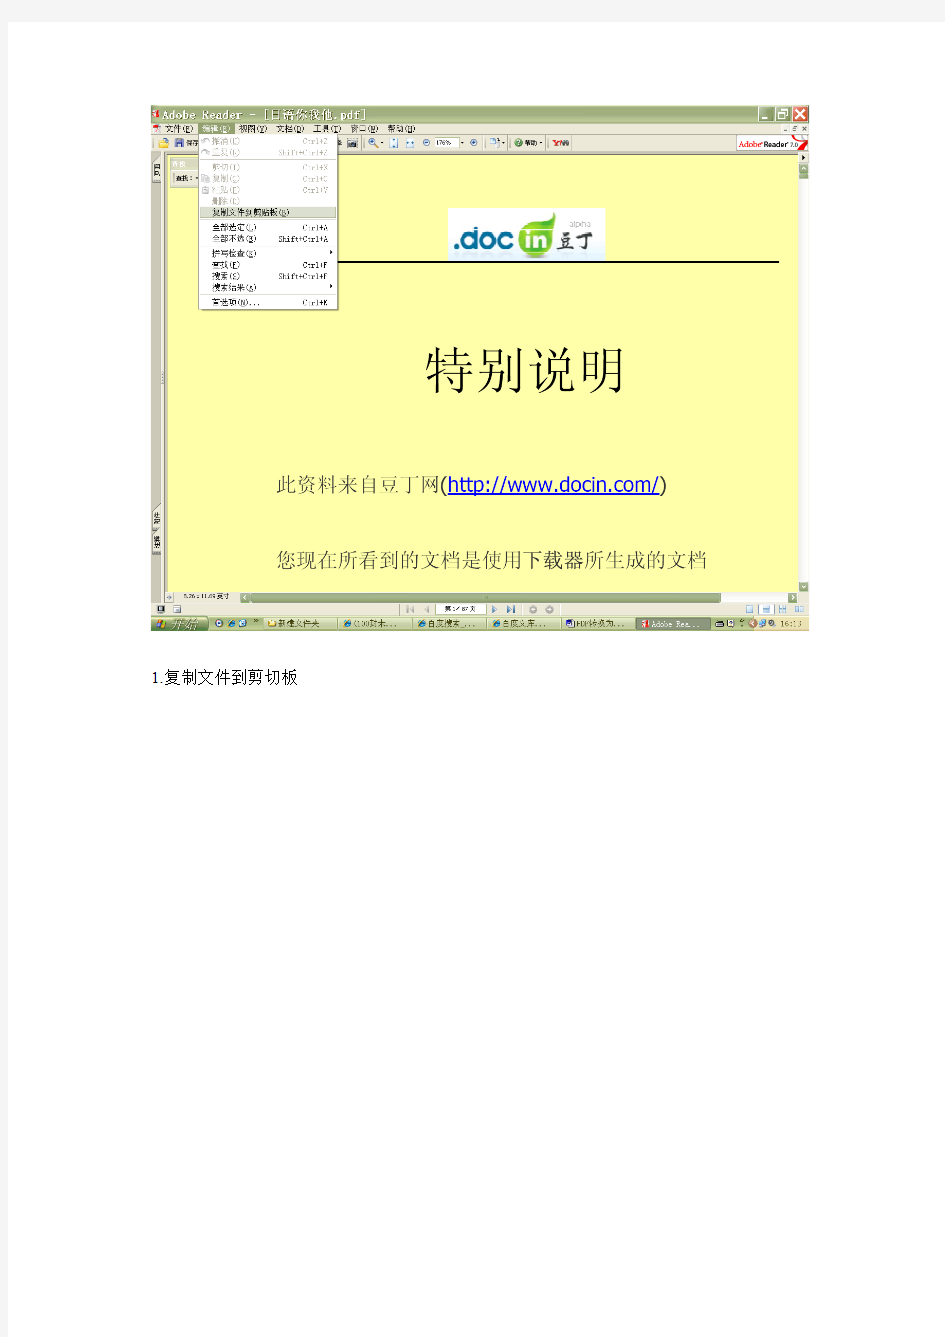 PDF转换为JPG